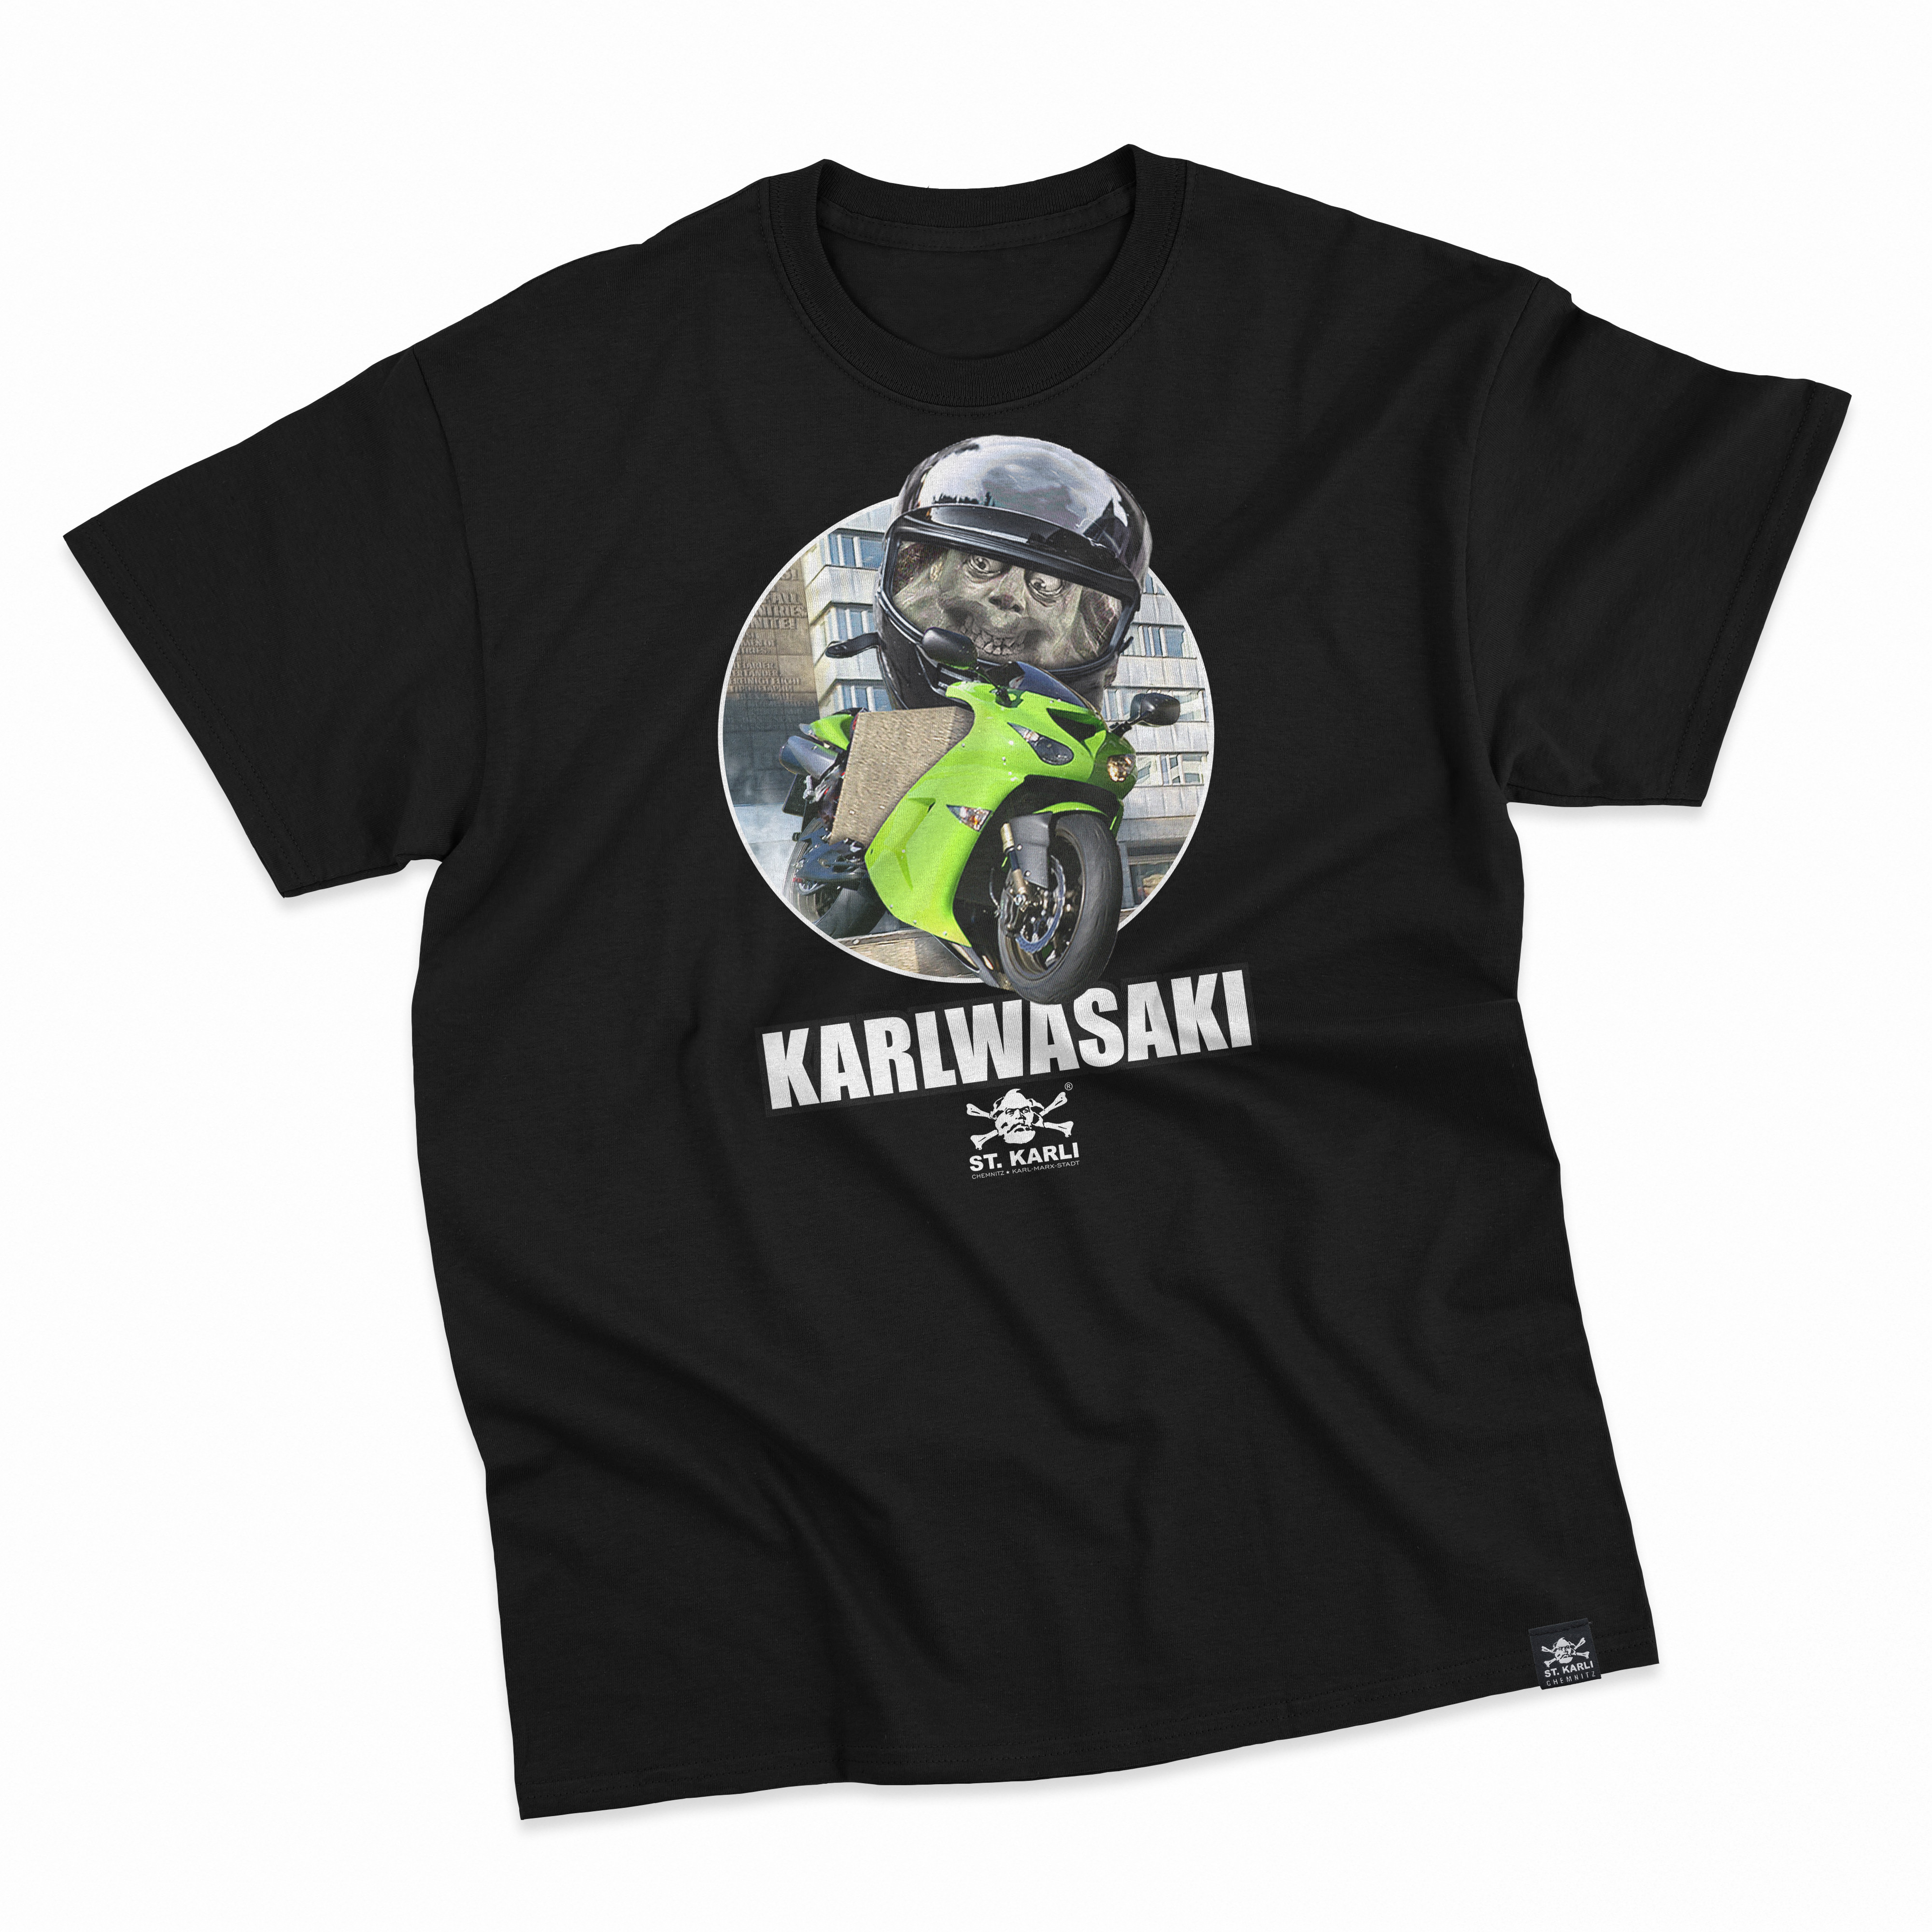 St. Karli T-Shirt "KARLWASAKI"